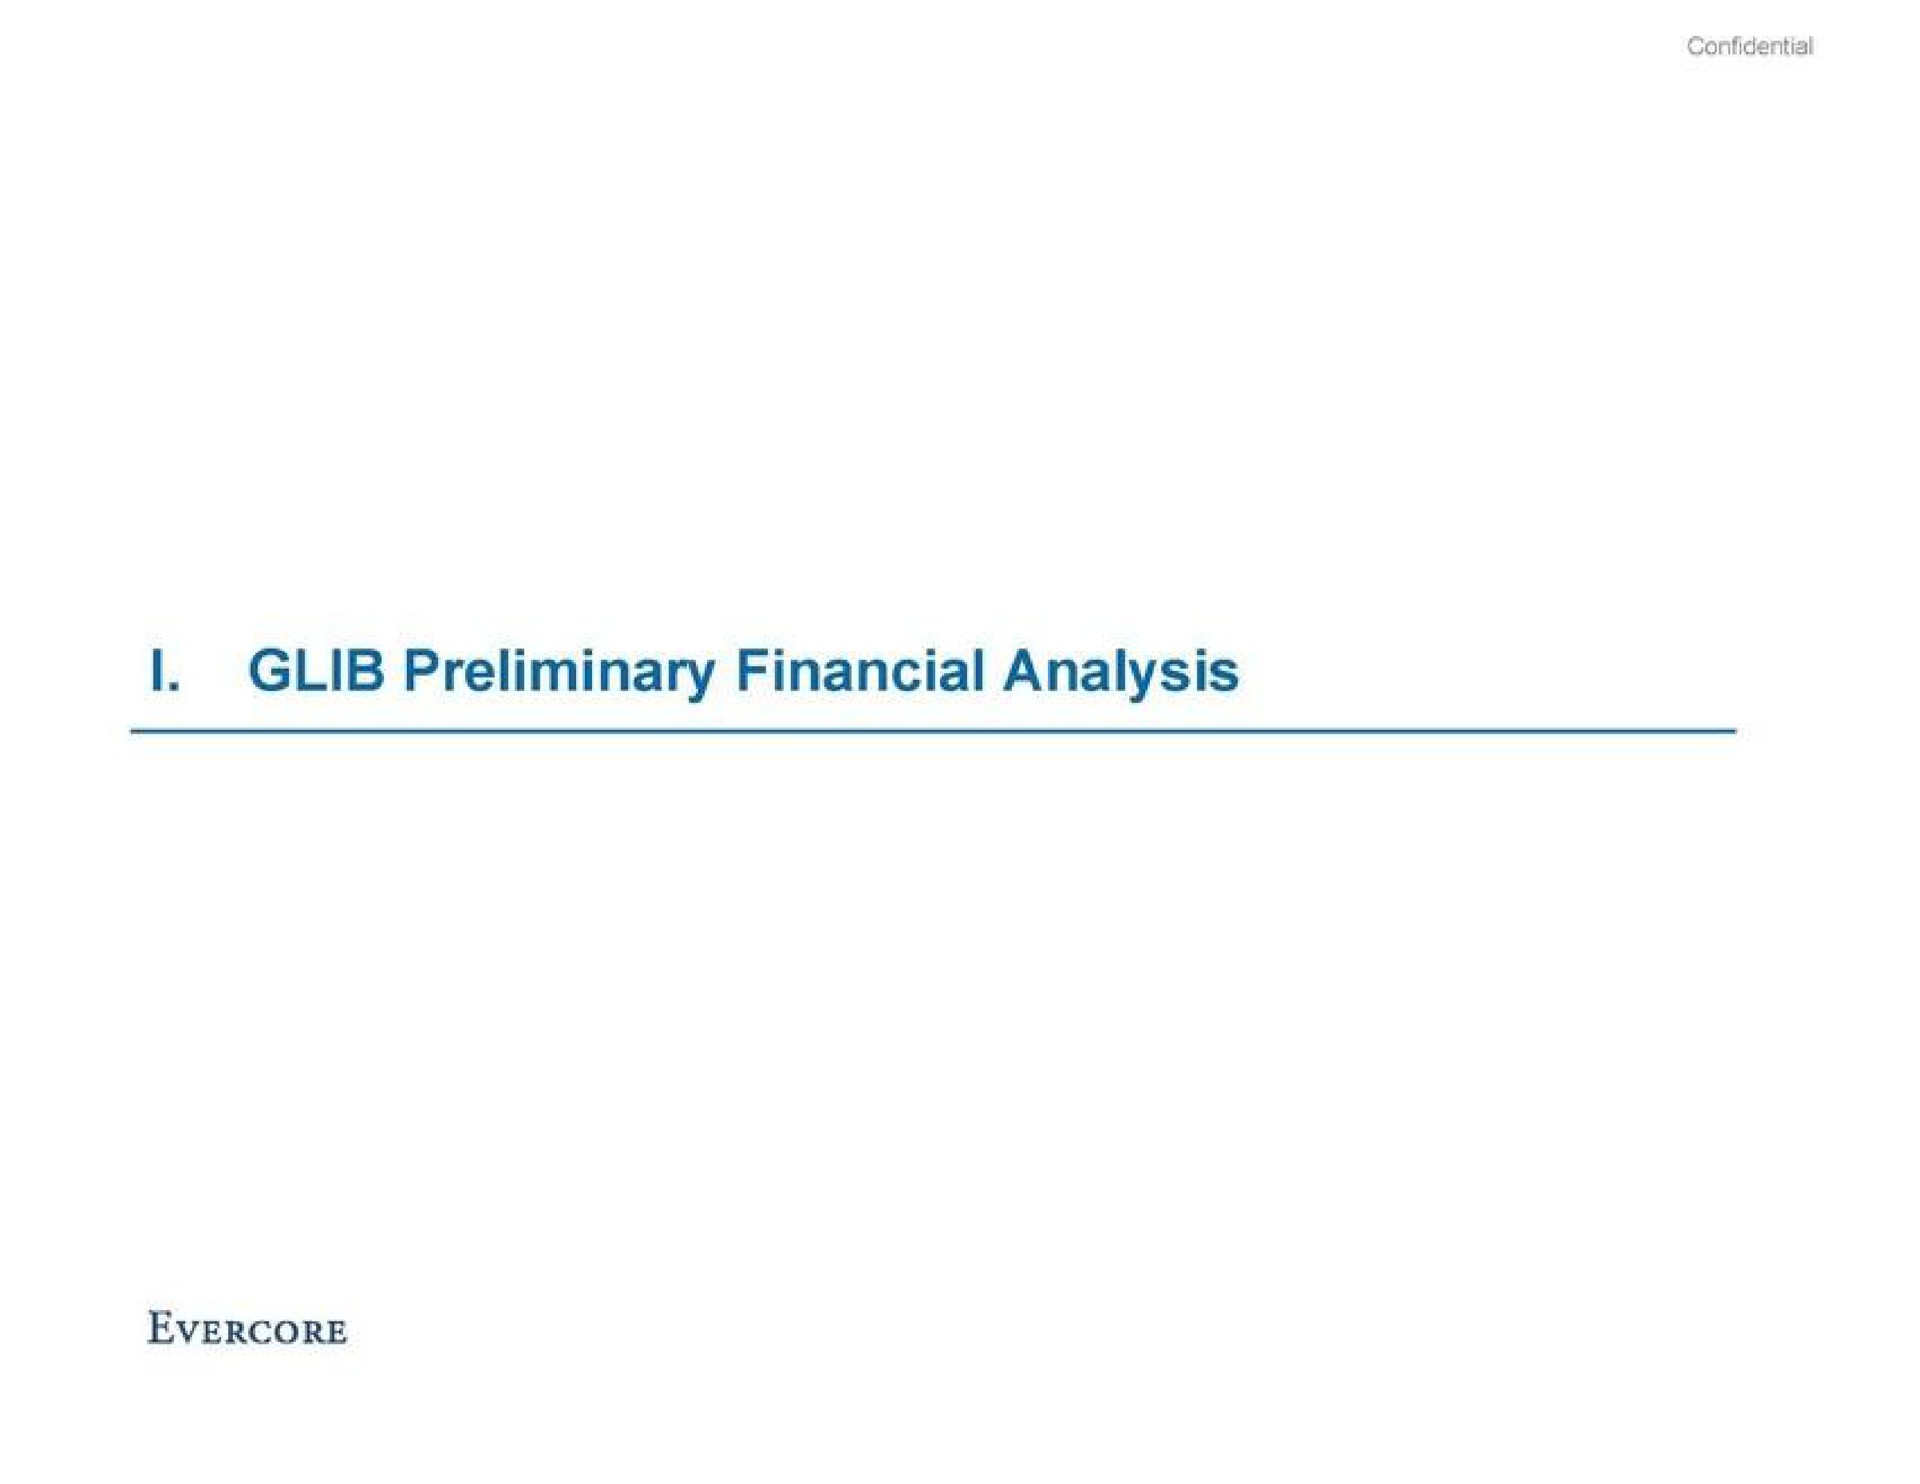 glib preliminary financial analysis | Evercore